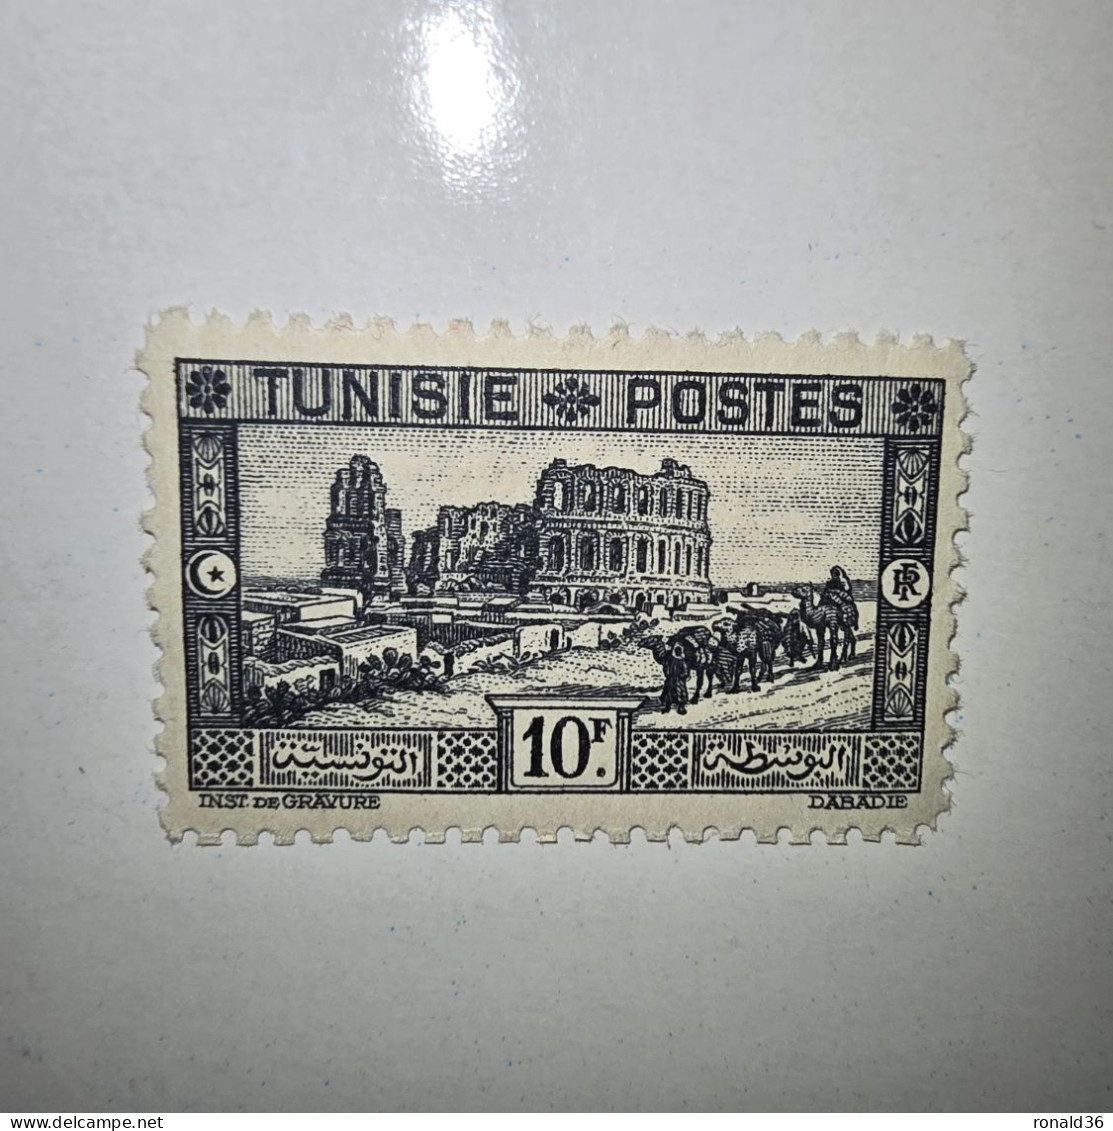 TUNISIE POSTES N° 179 10 Francs Noir F 1888 1938 FRANCE Timbre Poste Francais Ex Colonie Française Protectorat - Unused Stamps